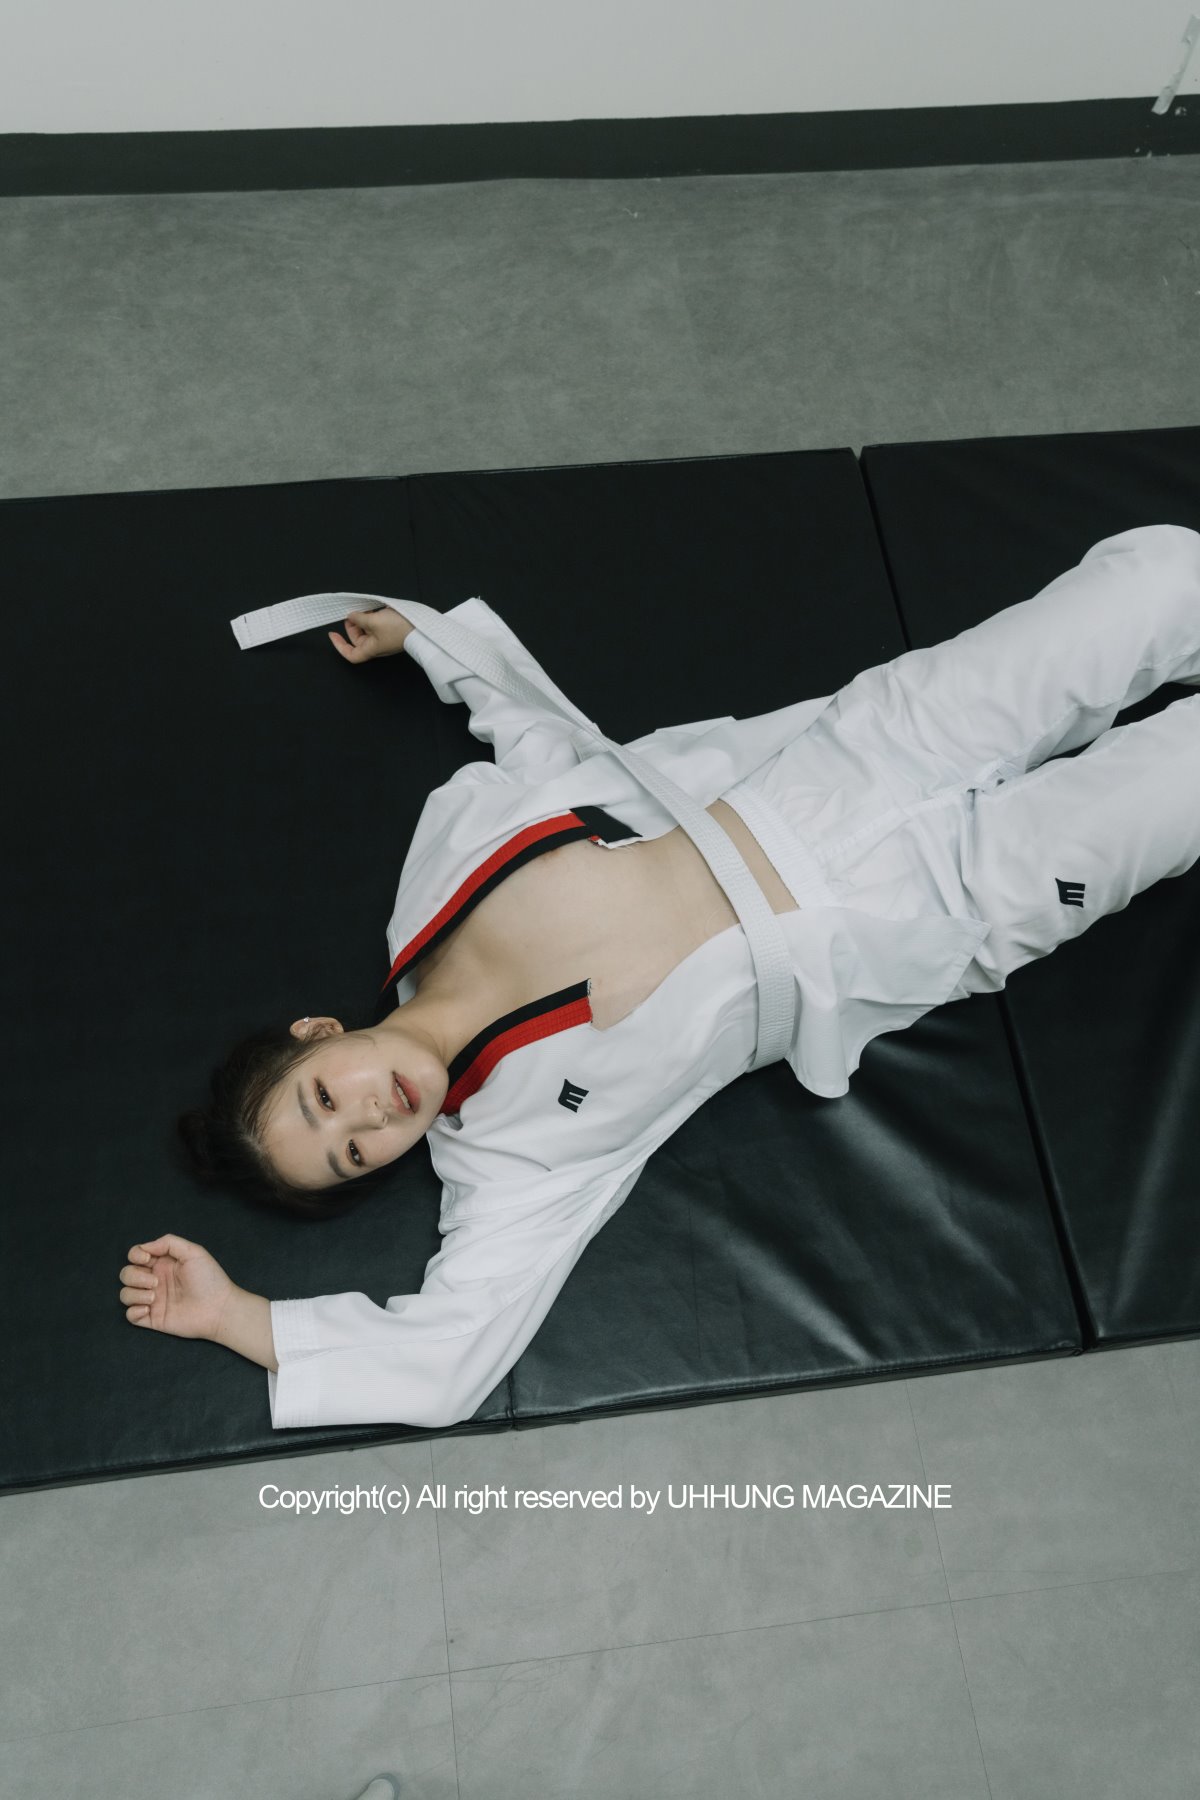 UHHUNG MAGAZINE Jenn Vol 1 Taekwondo Part2 0025 1533587580.jpg